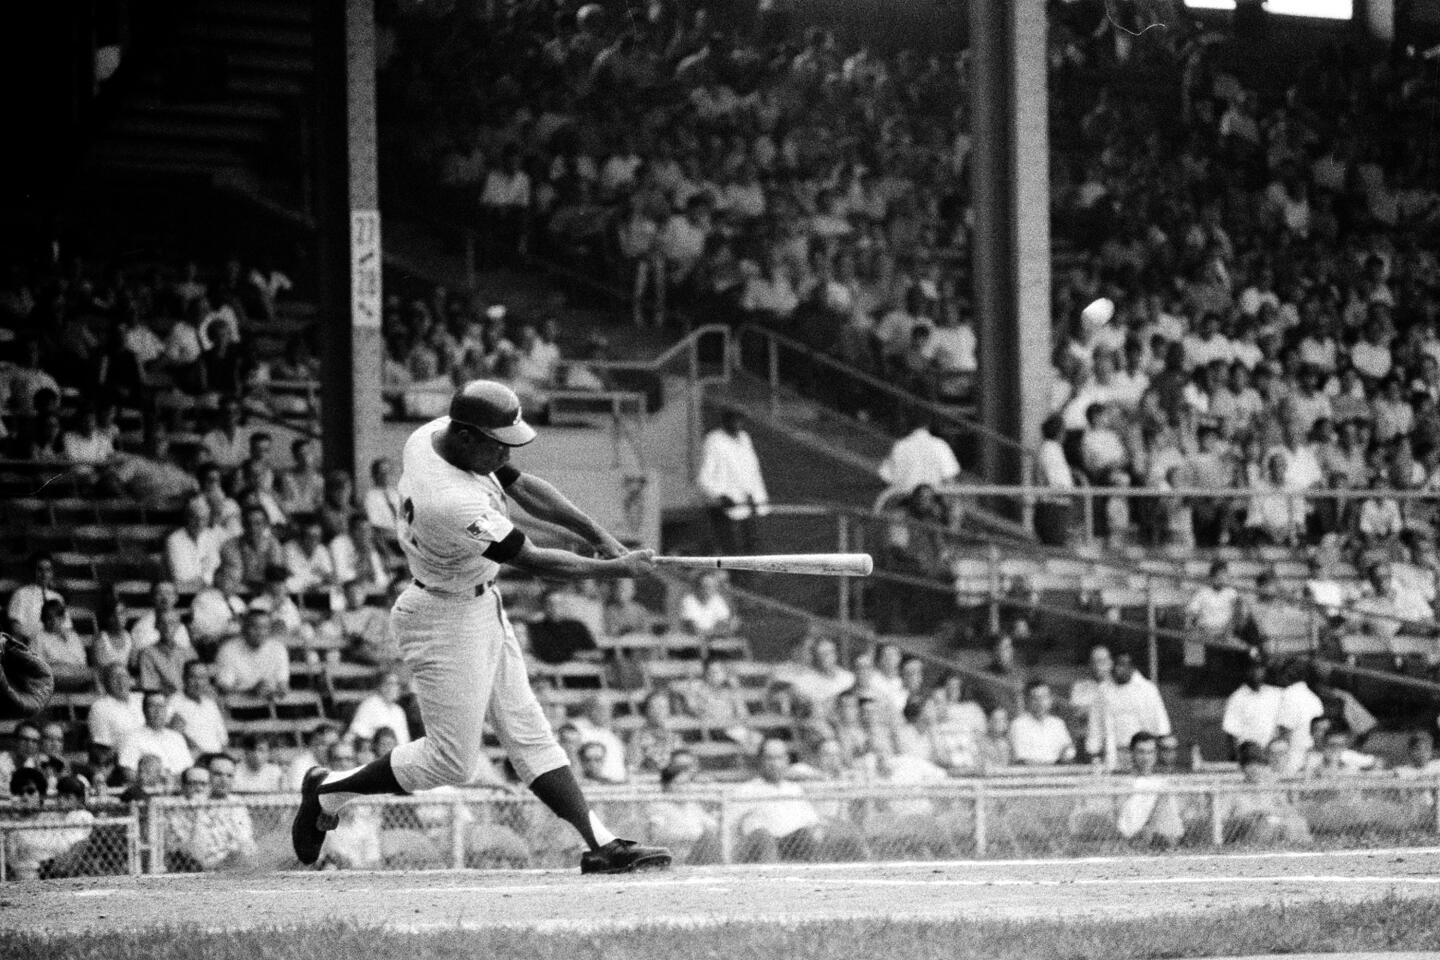 Baseball great and humanitarian Hank Aaron passes at 86